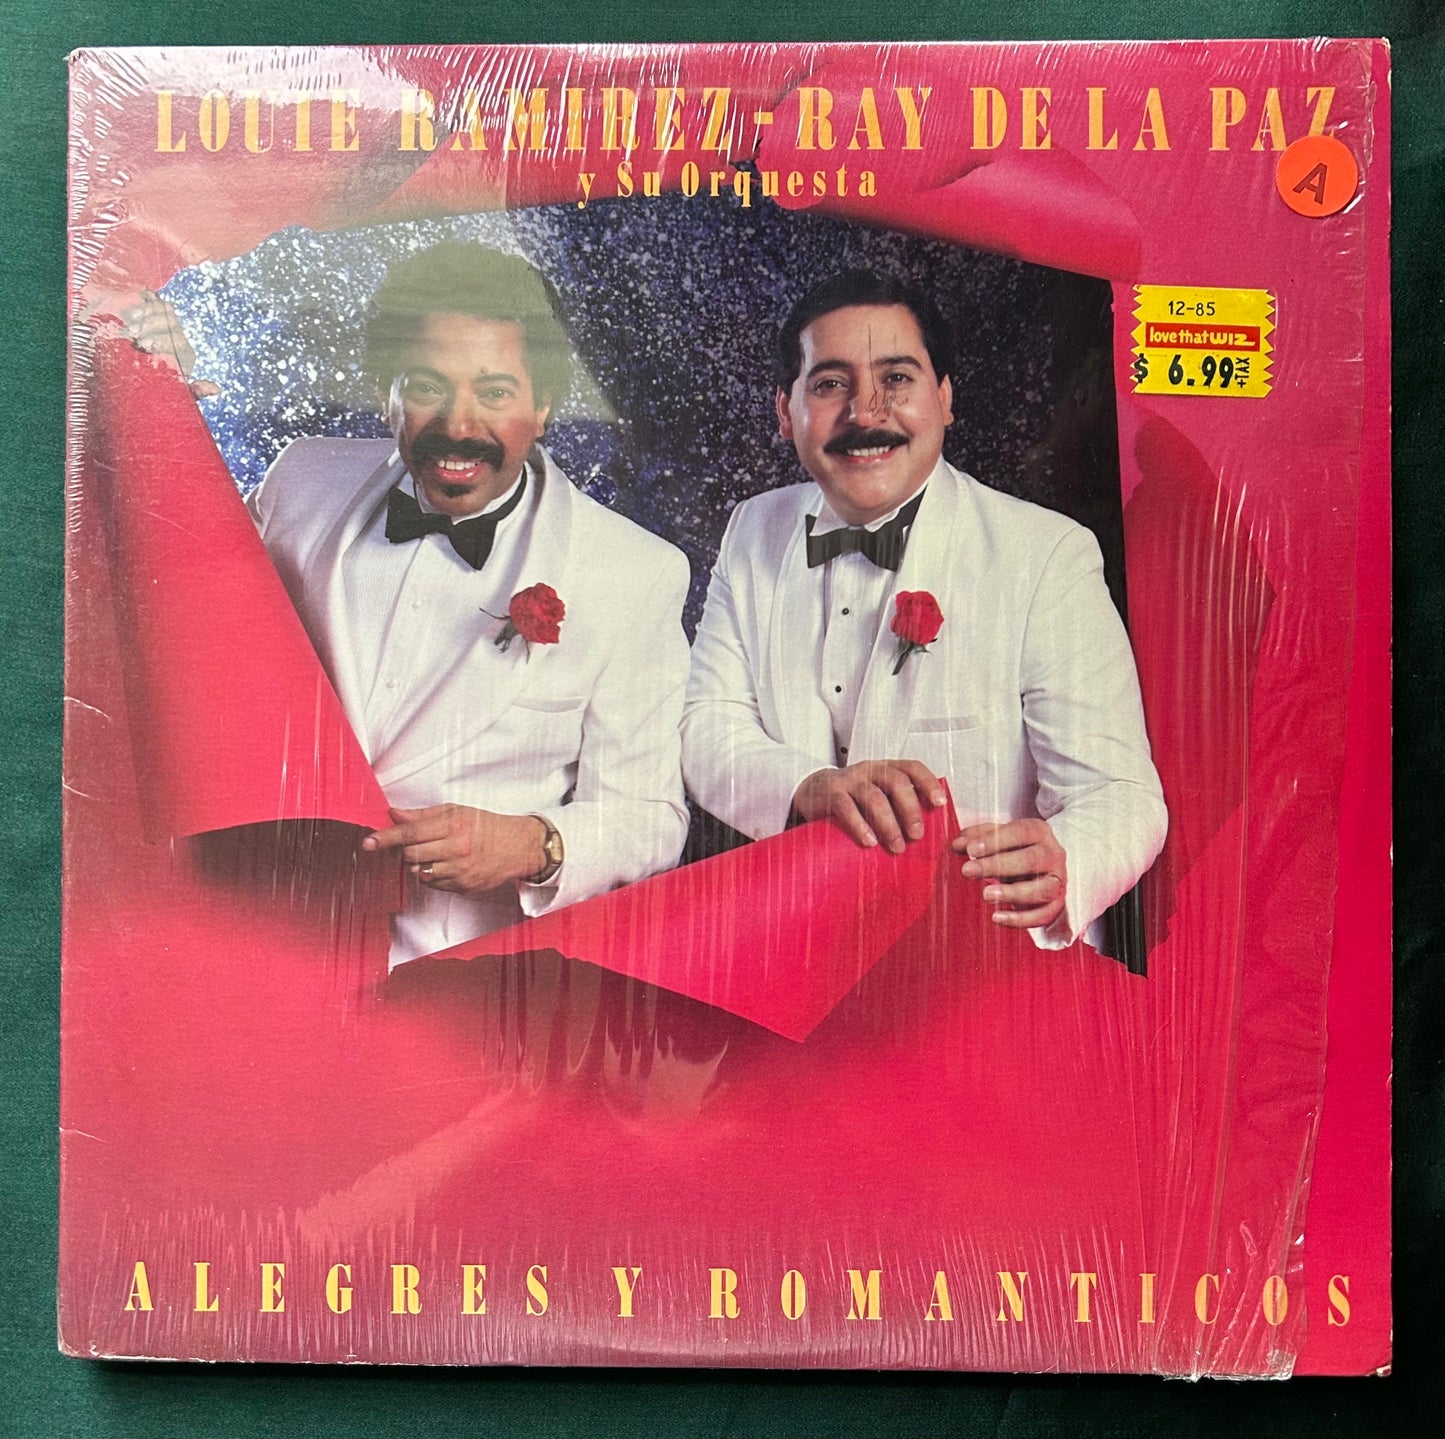 Louie Ramirez - Ray De La Paz - Alegres Y Romanticos 1st Press 1985 Caiman Salsa / Latin Jazz